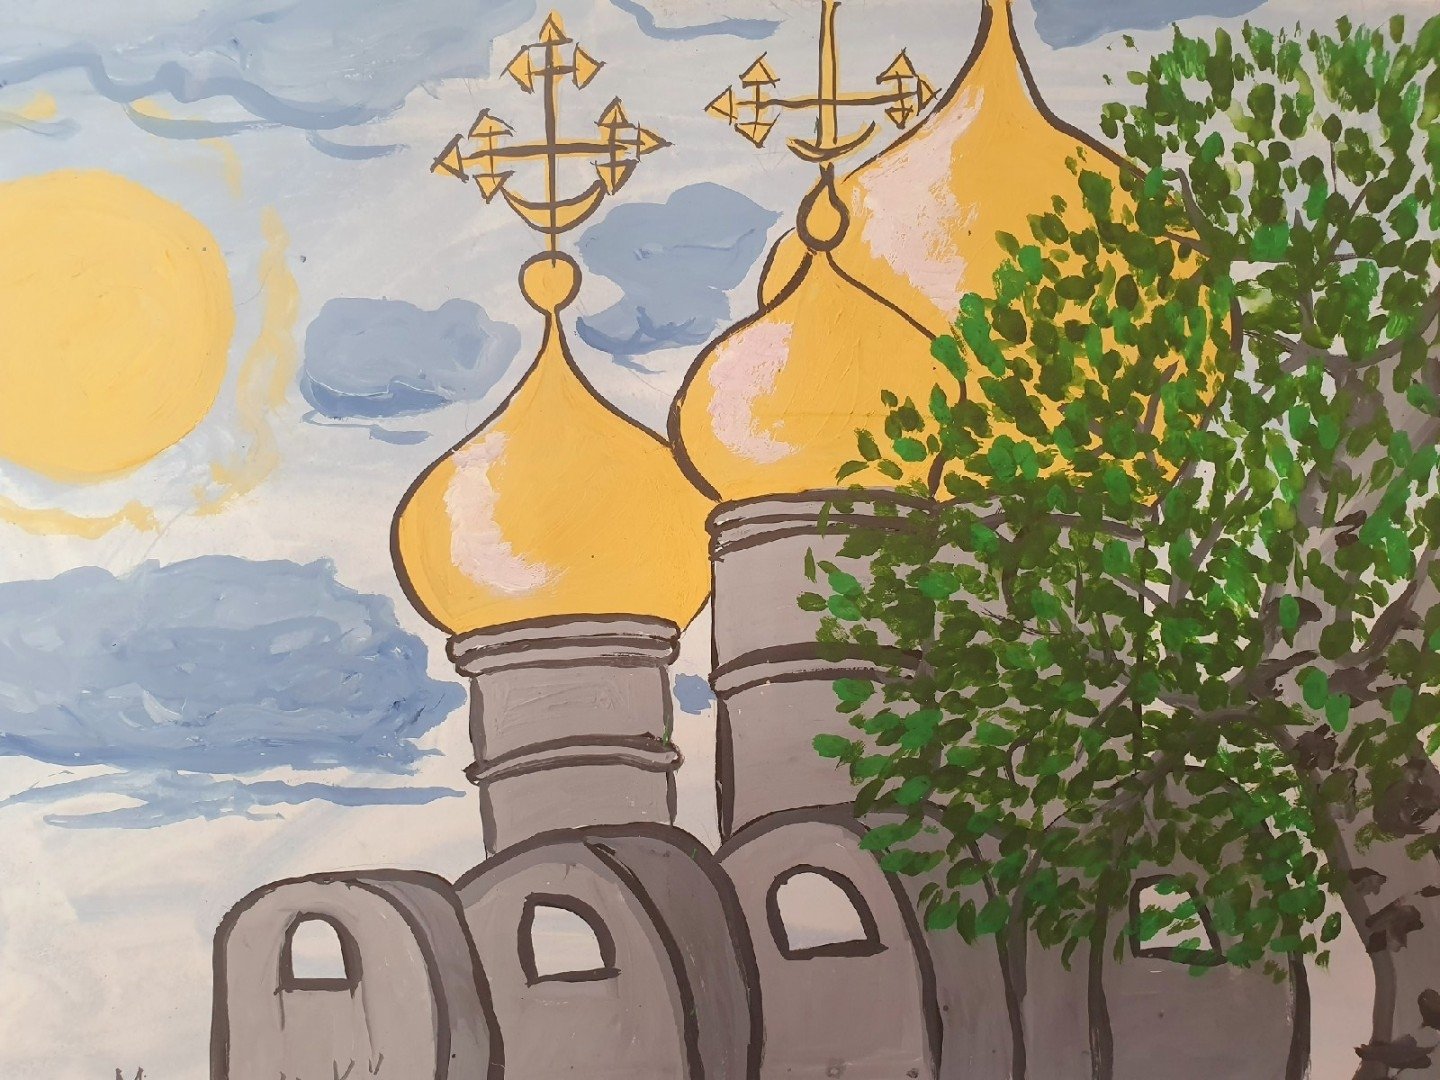 Свенский монастырь Брянск рисунок